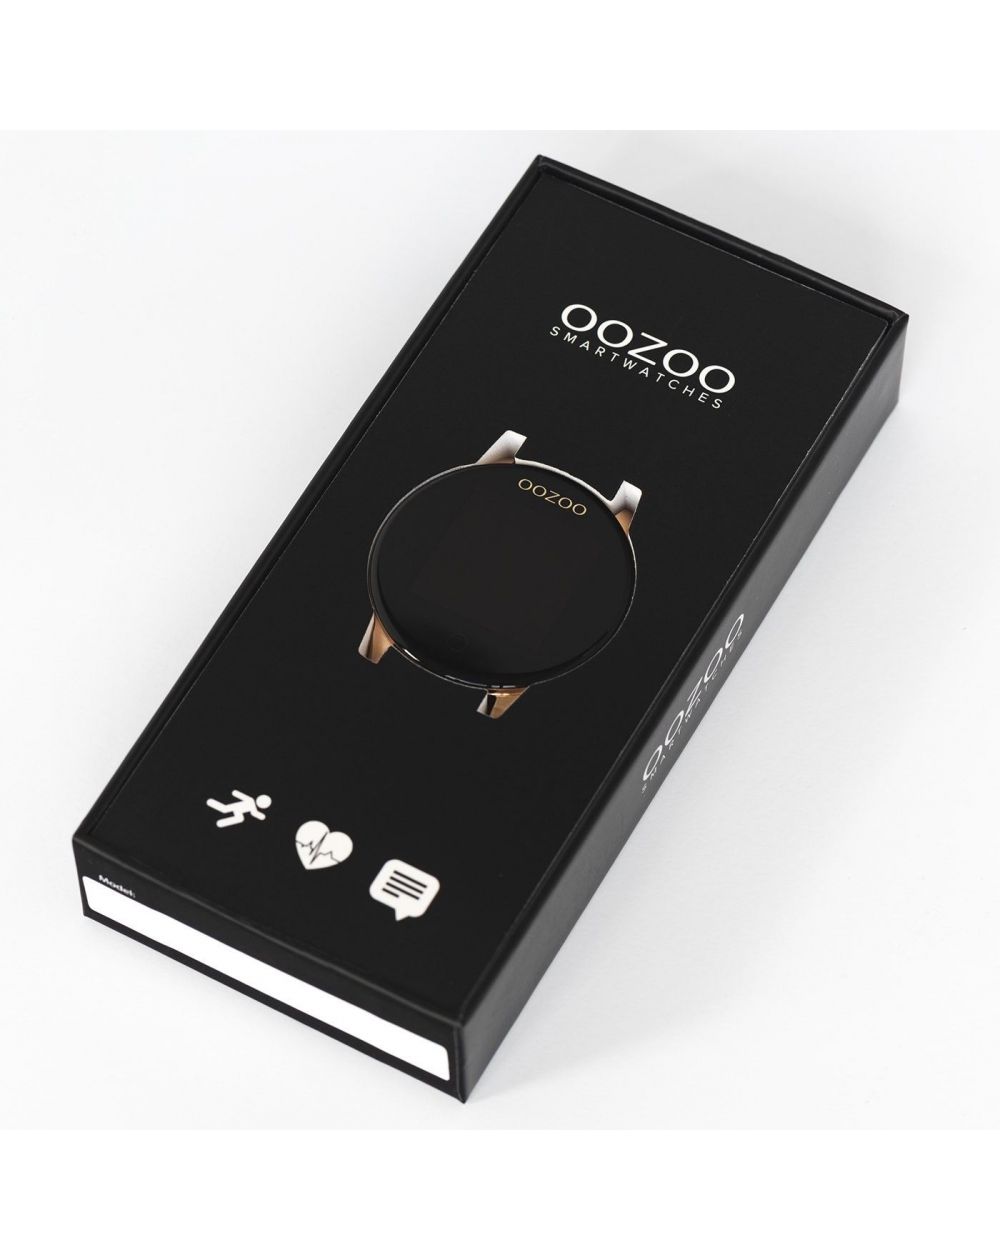 Montre Oozoo Q00116 - Smartwatch - Marque OOZOO - Livraison gratuite